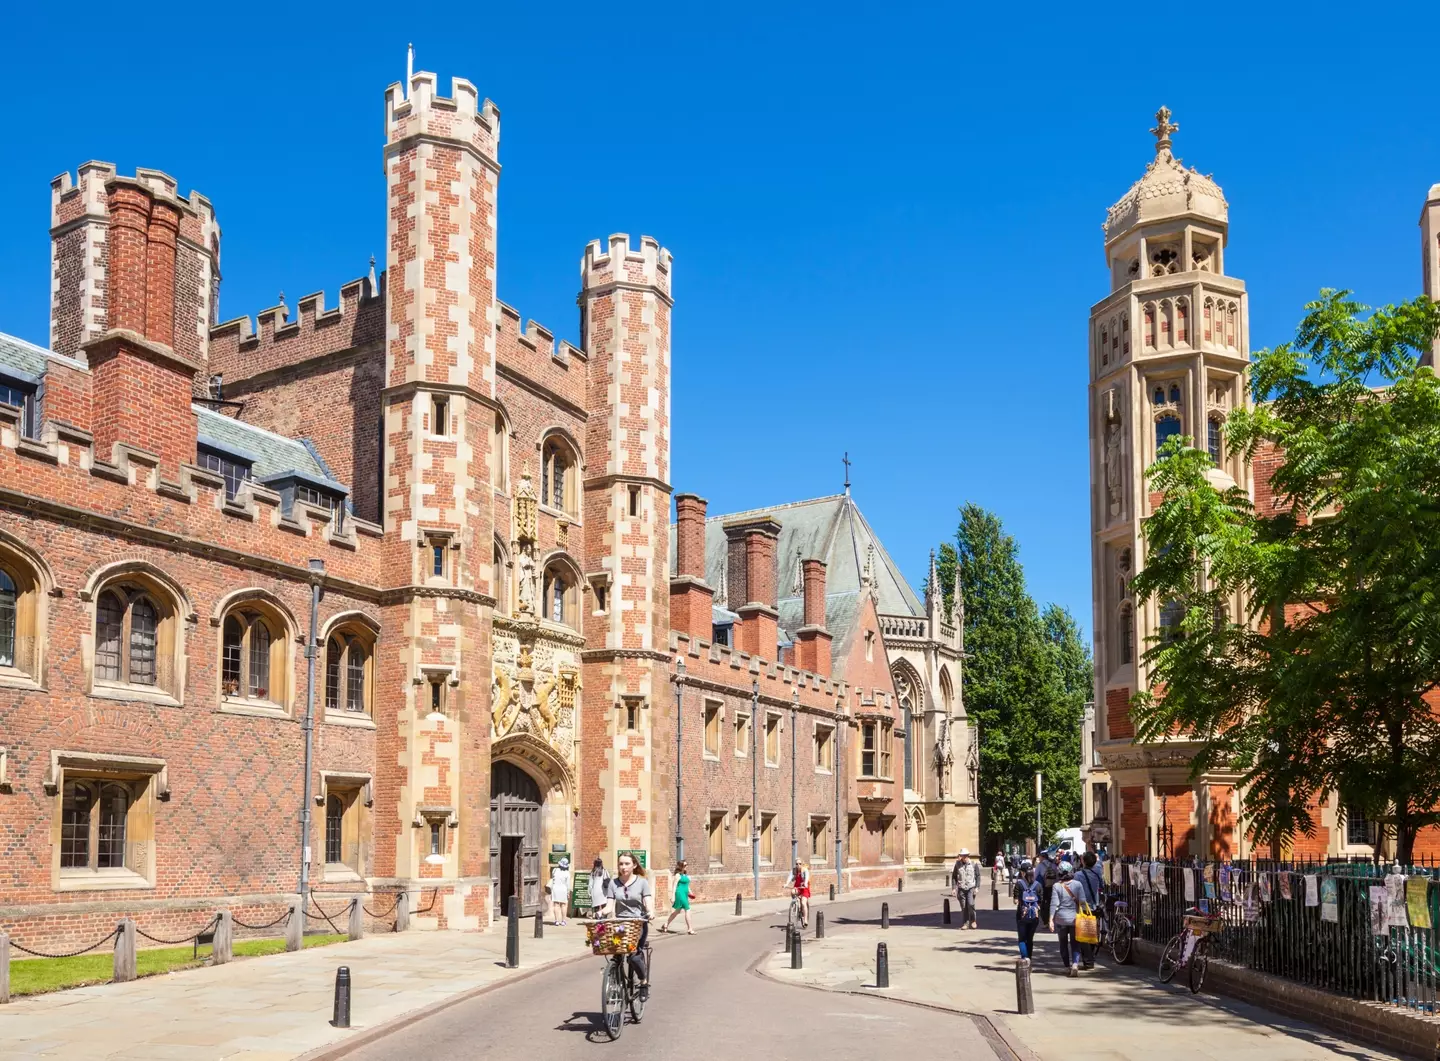 Cambridge University.